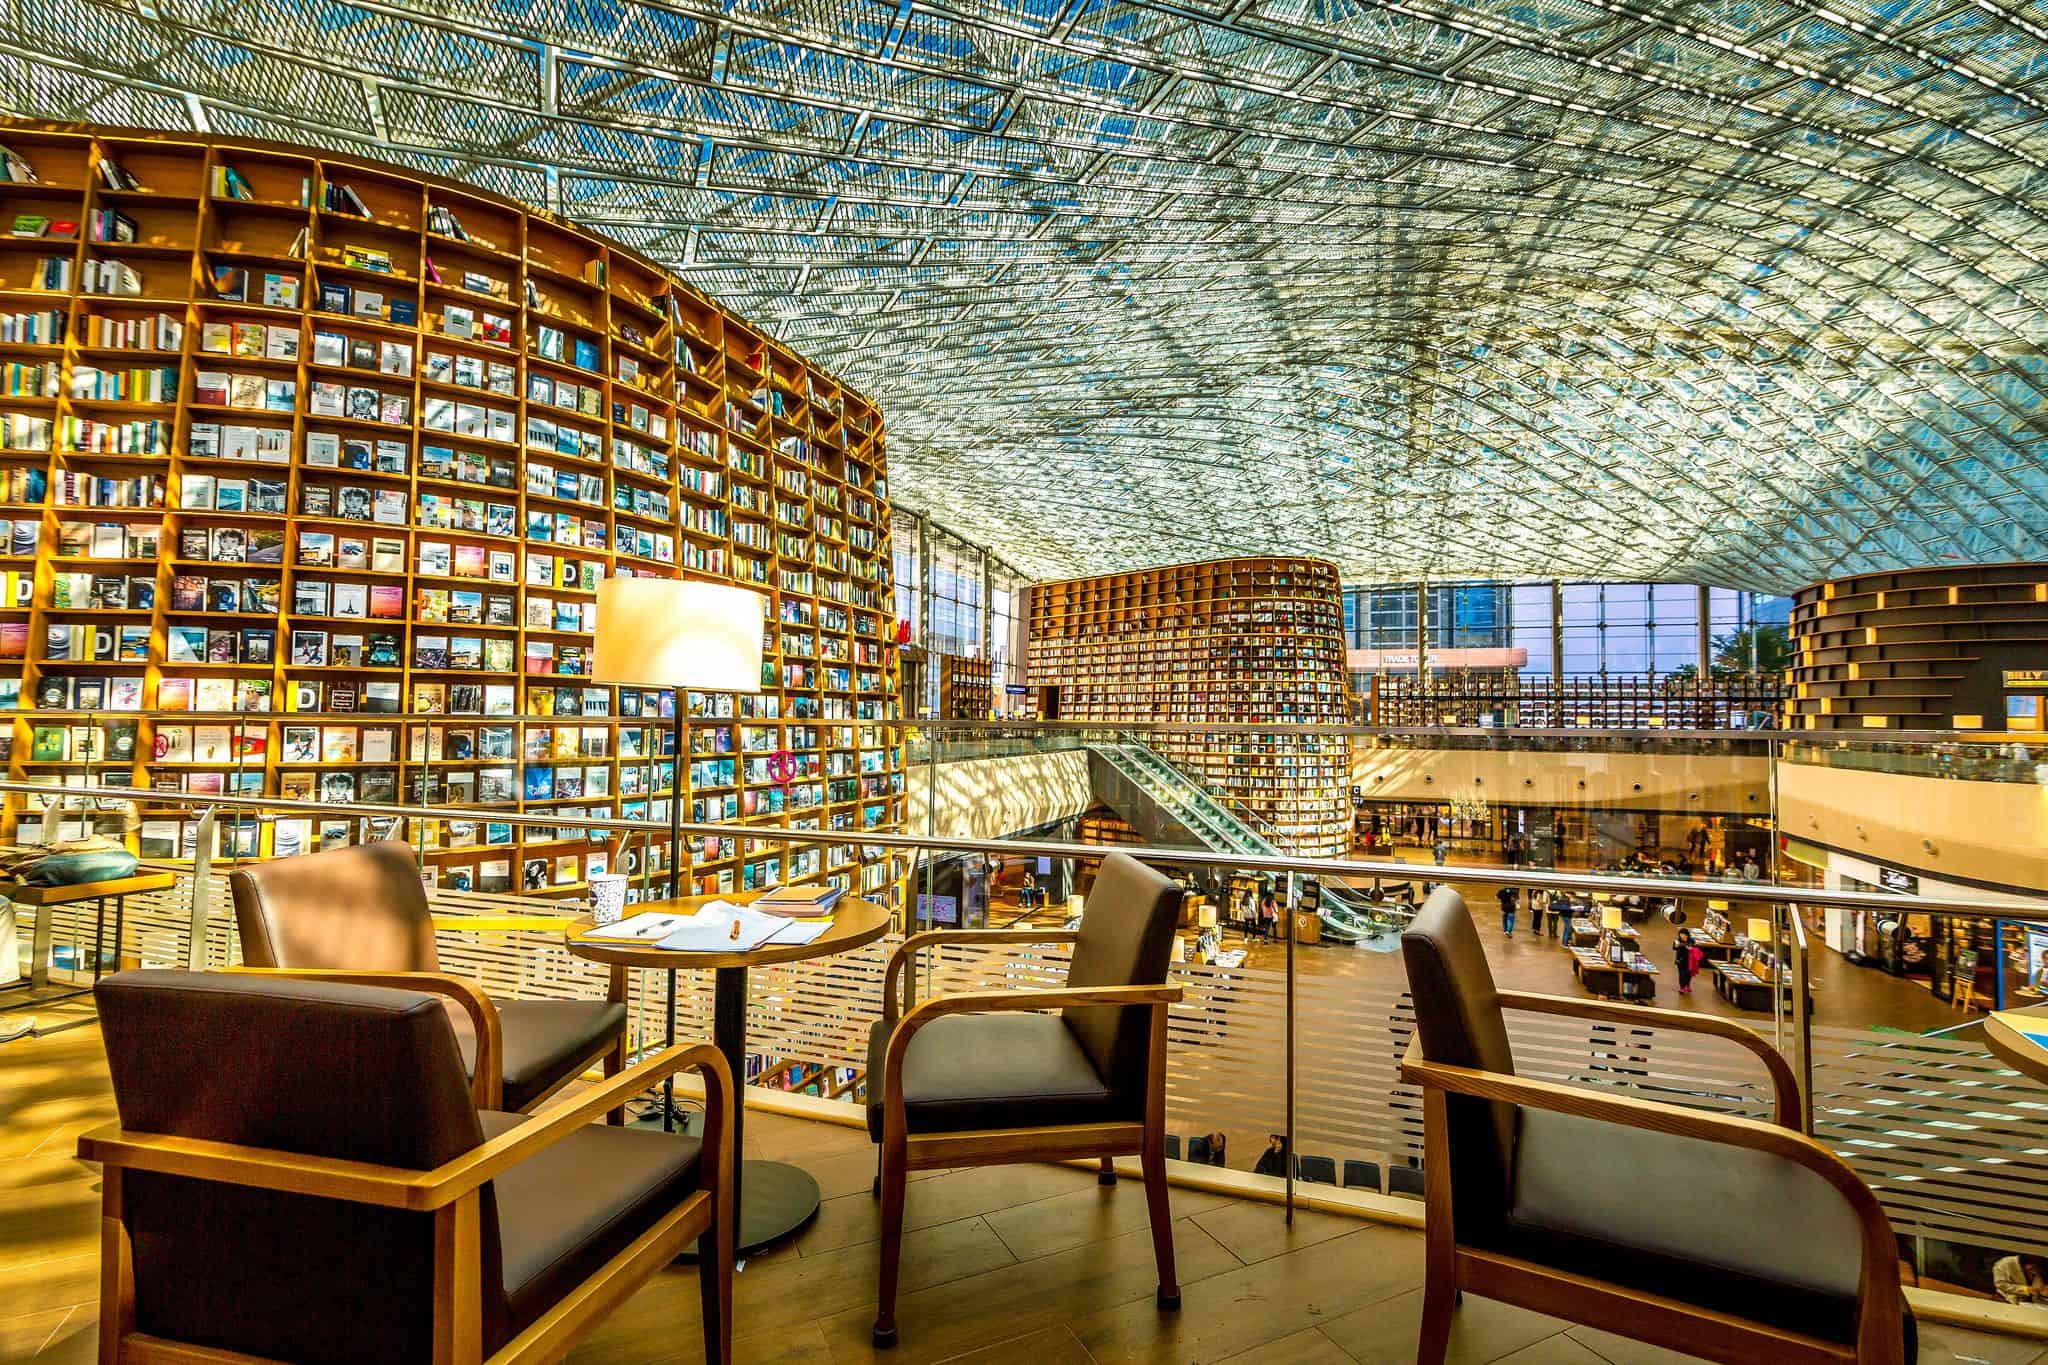 Hình ảnh thư viện Stafield khổng lồ - góc sống ảo đầy thu hút ở Seoul